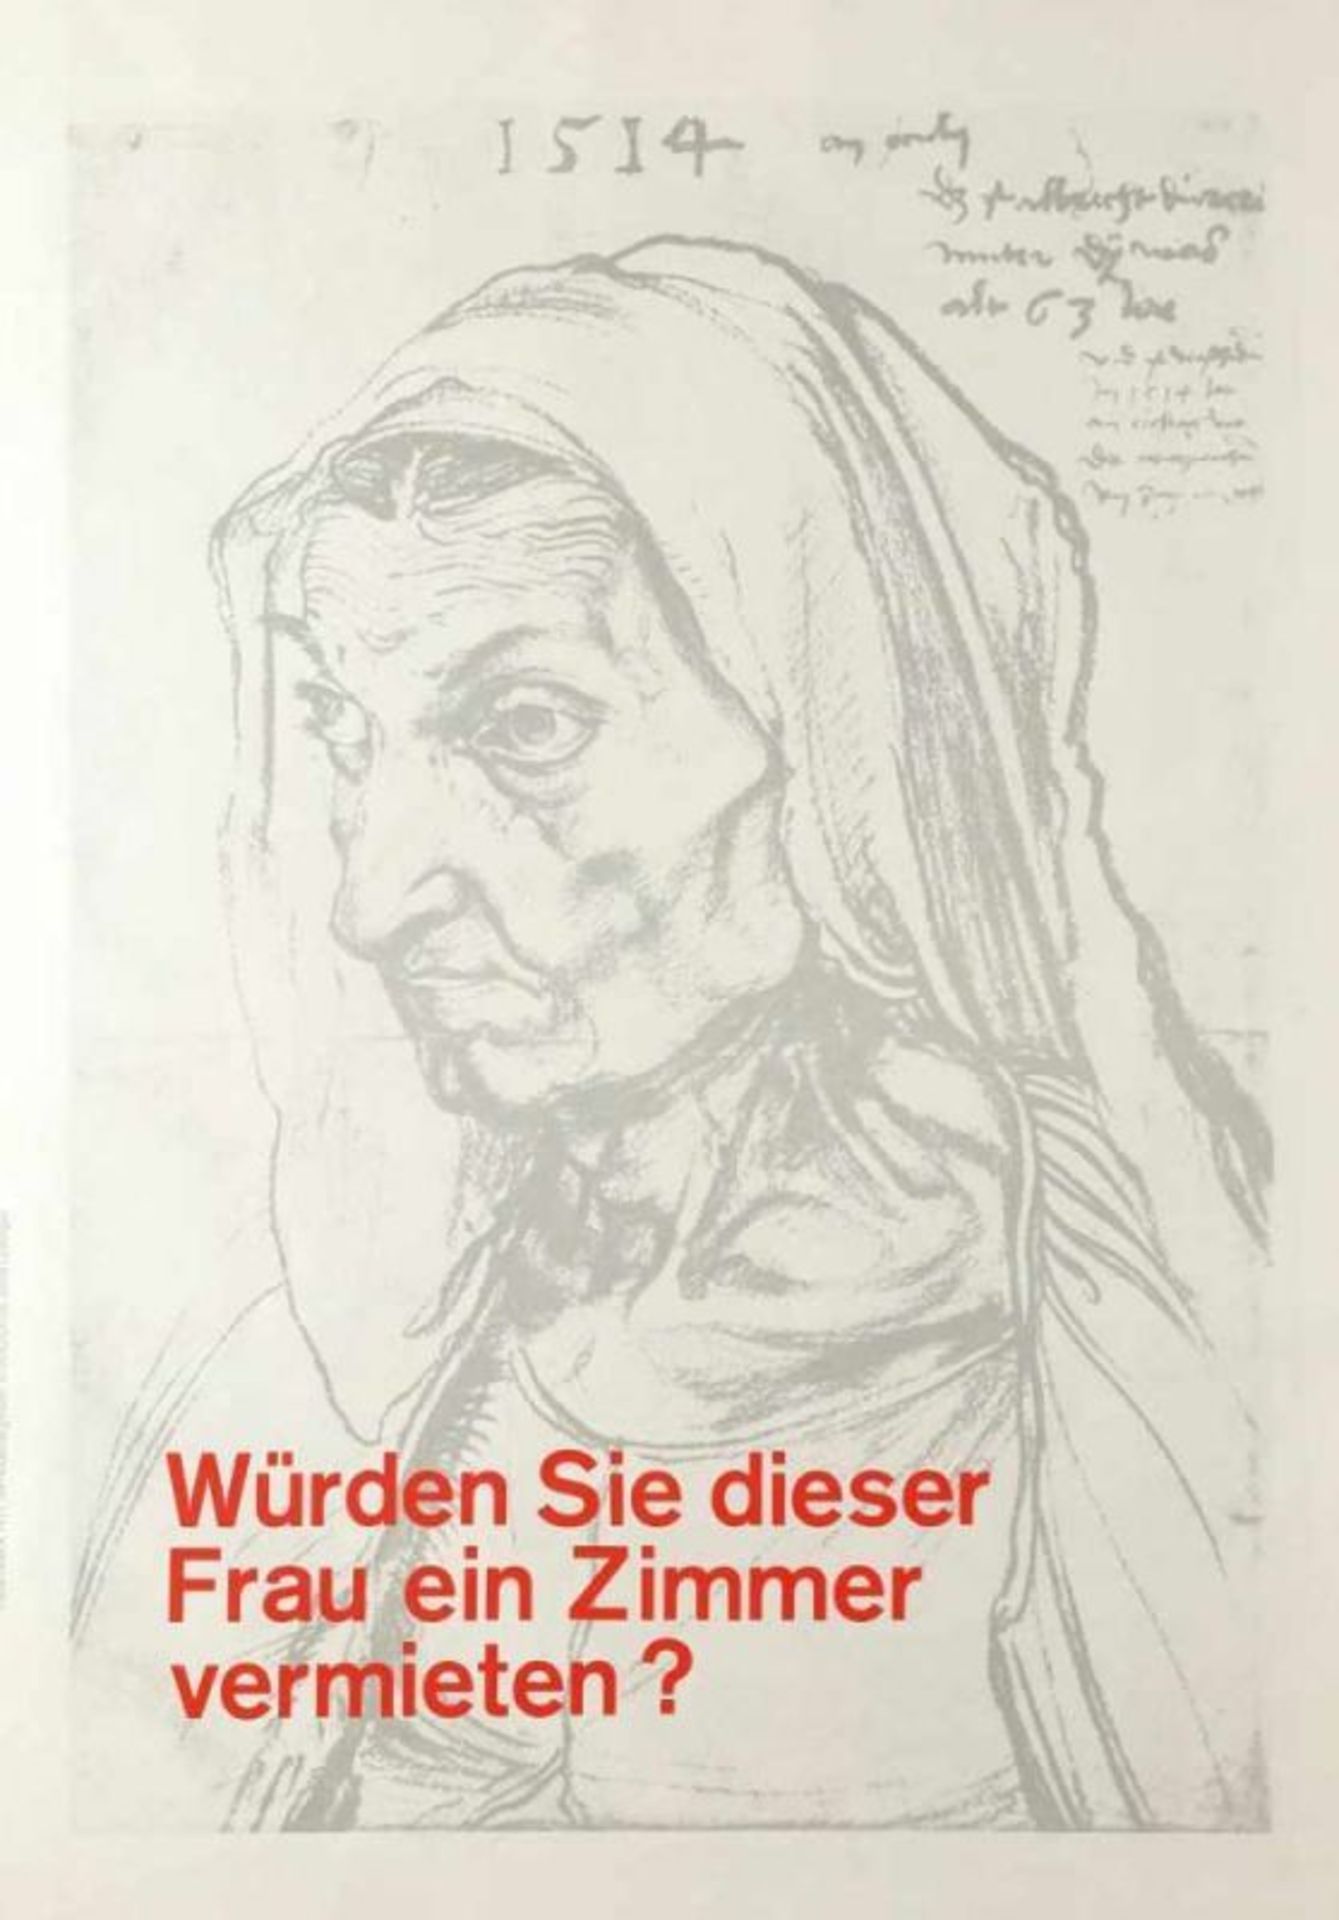 Klaus Staeck 1938 Pulsnitz bei Dresden - lebt und arbeitet in Heidelberg - "Politische Plakate" - - Bild 4 aus 8